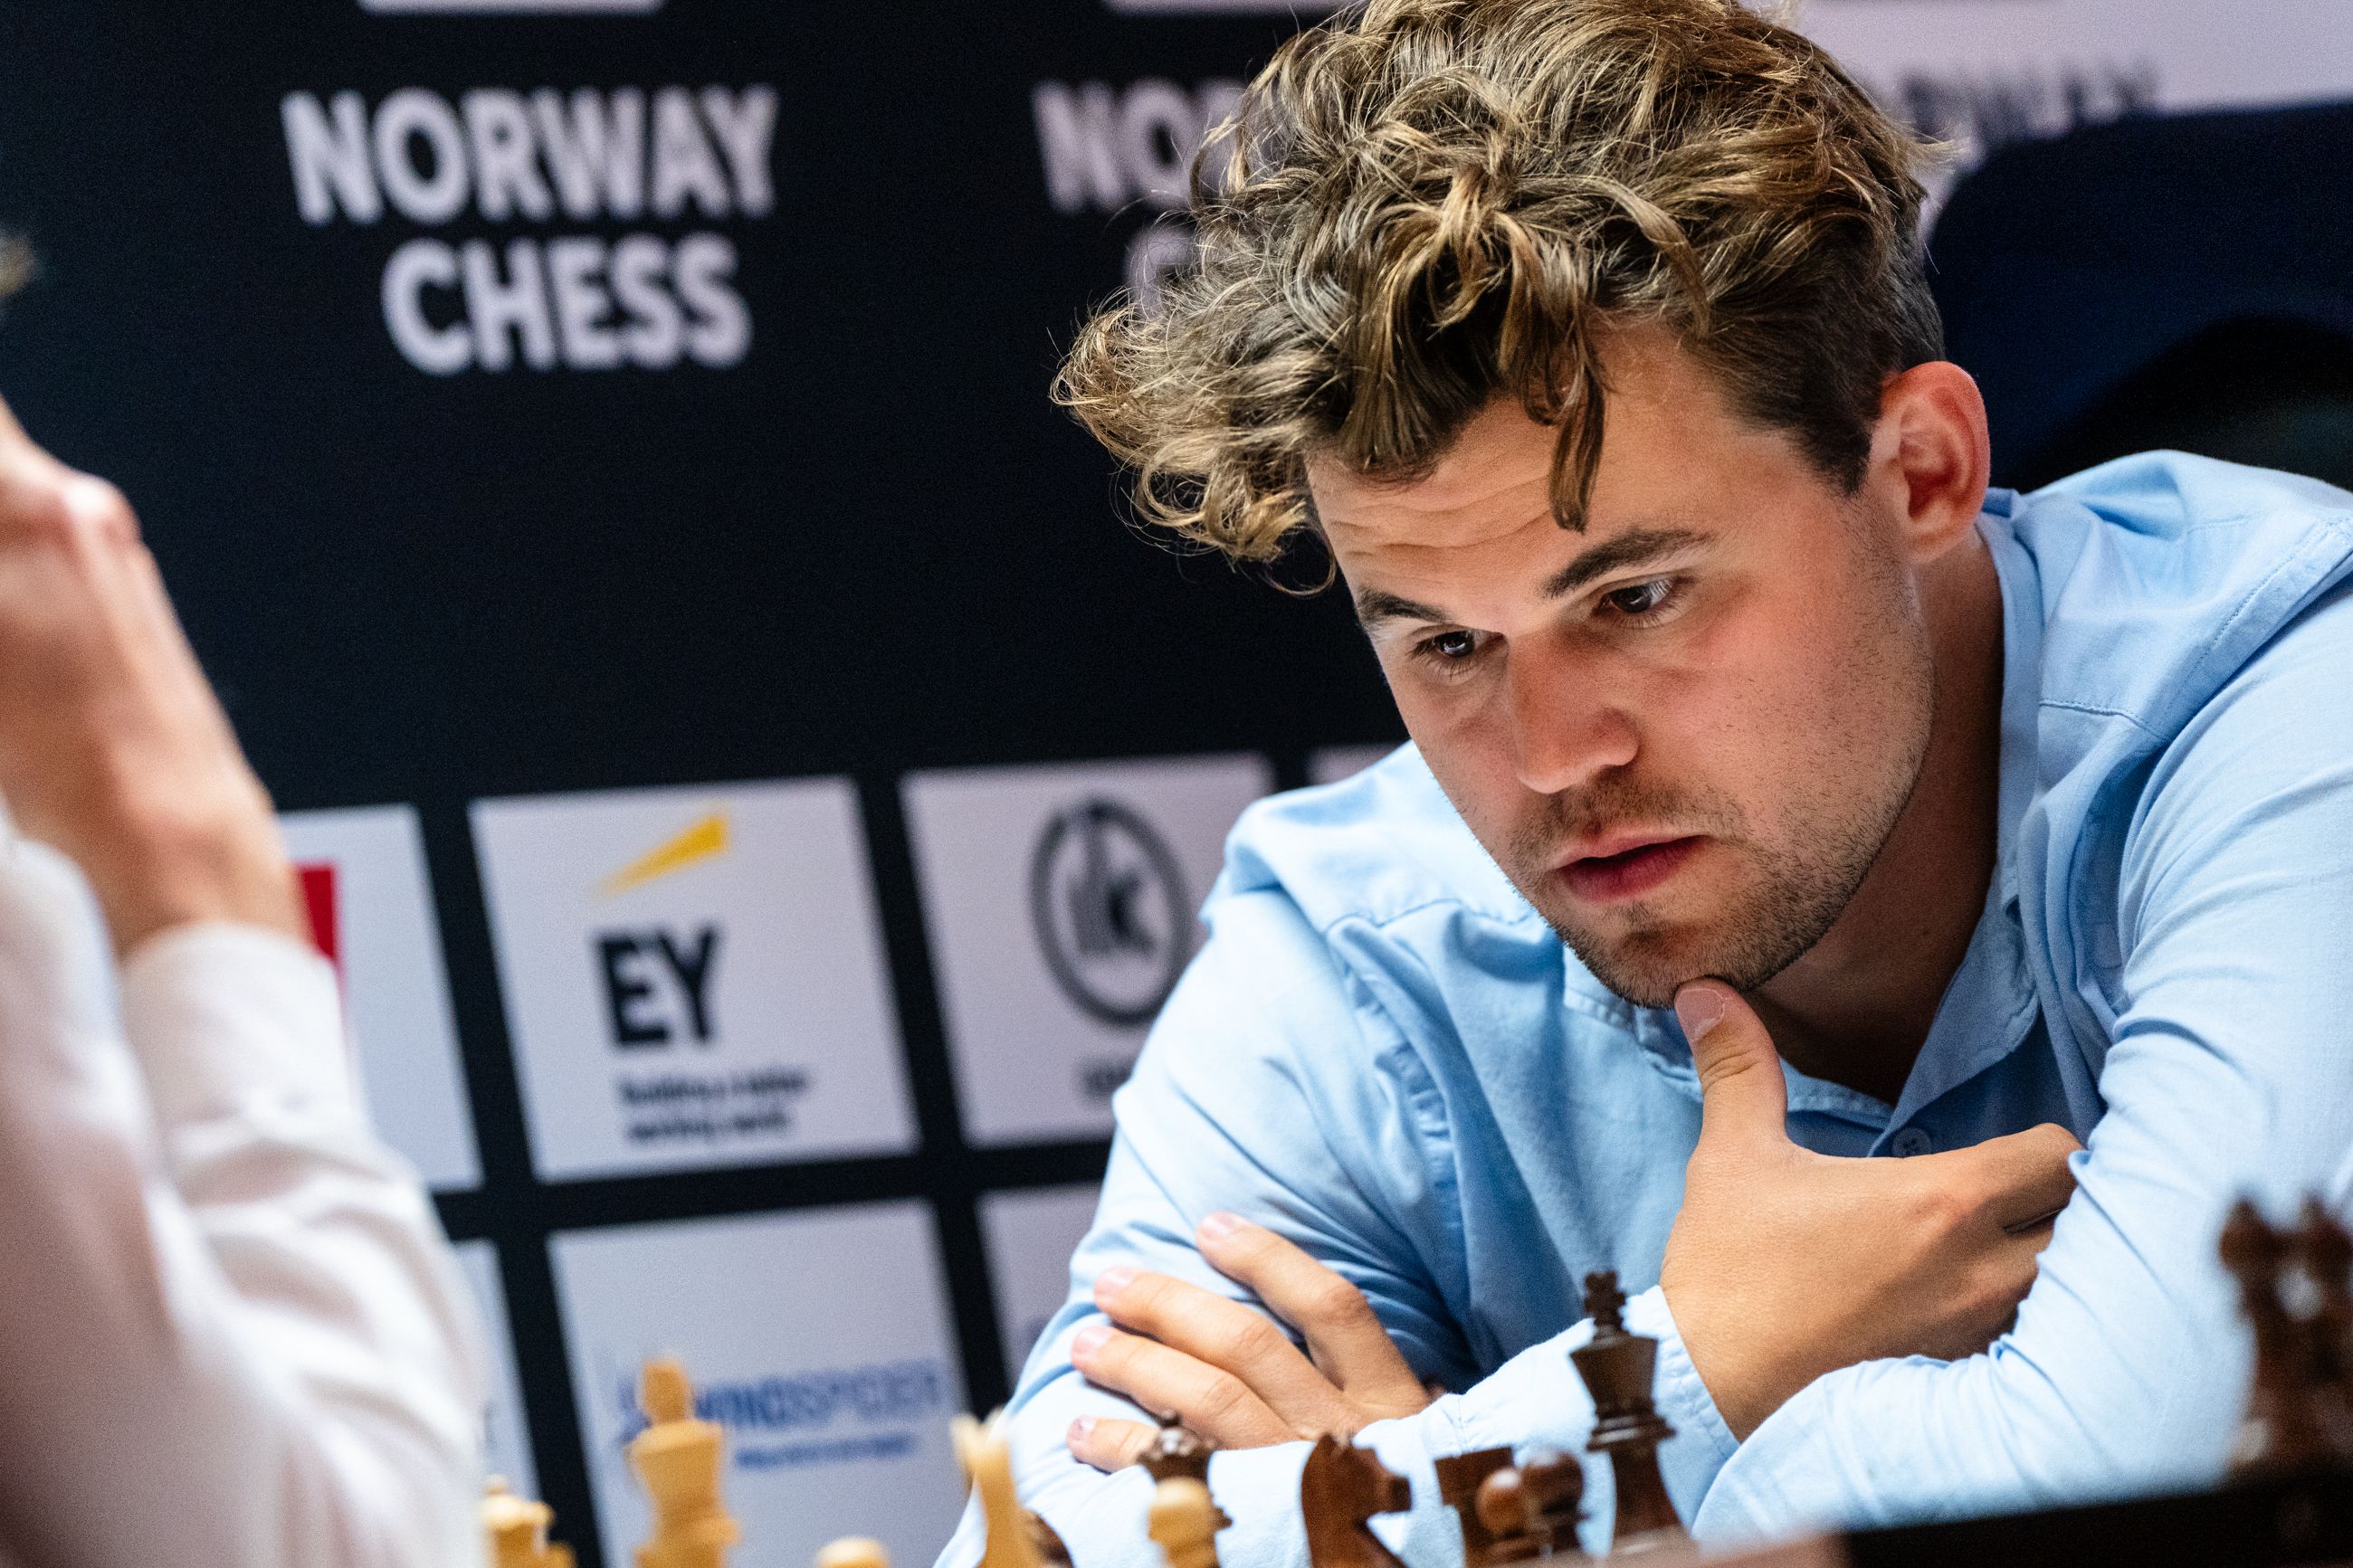 卡鲁阿纳-卡尔森挪威国际象棋 2024